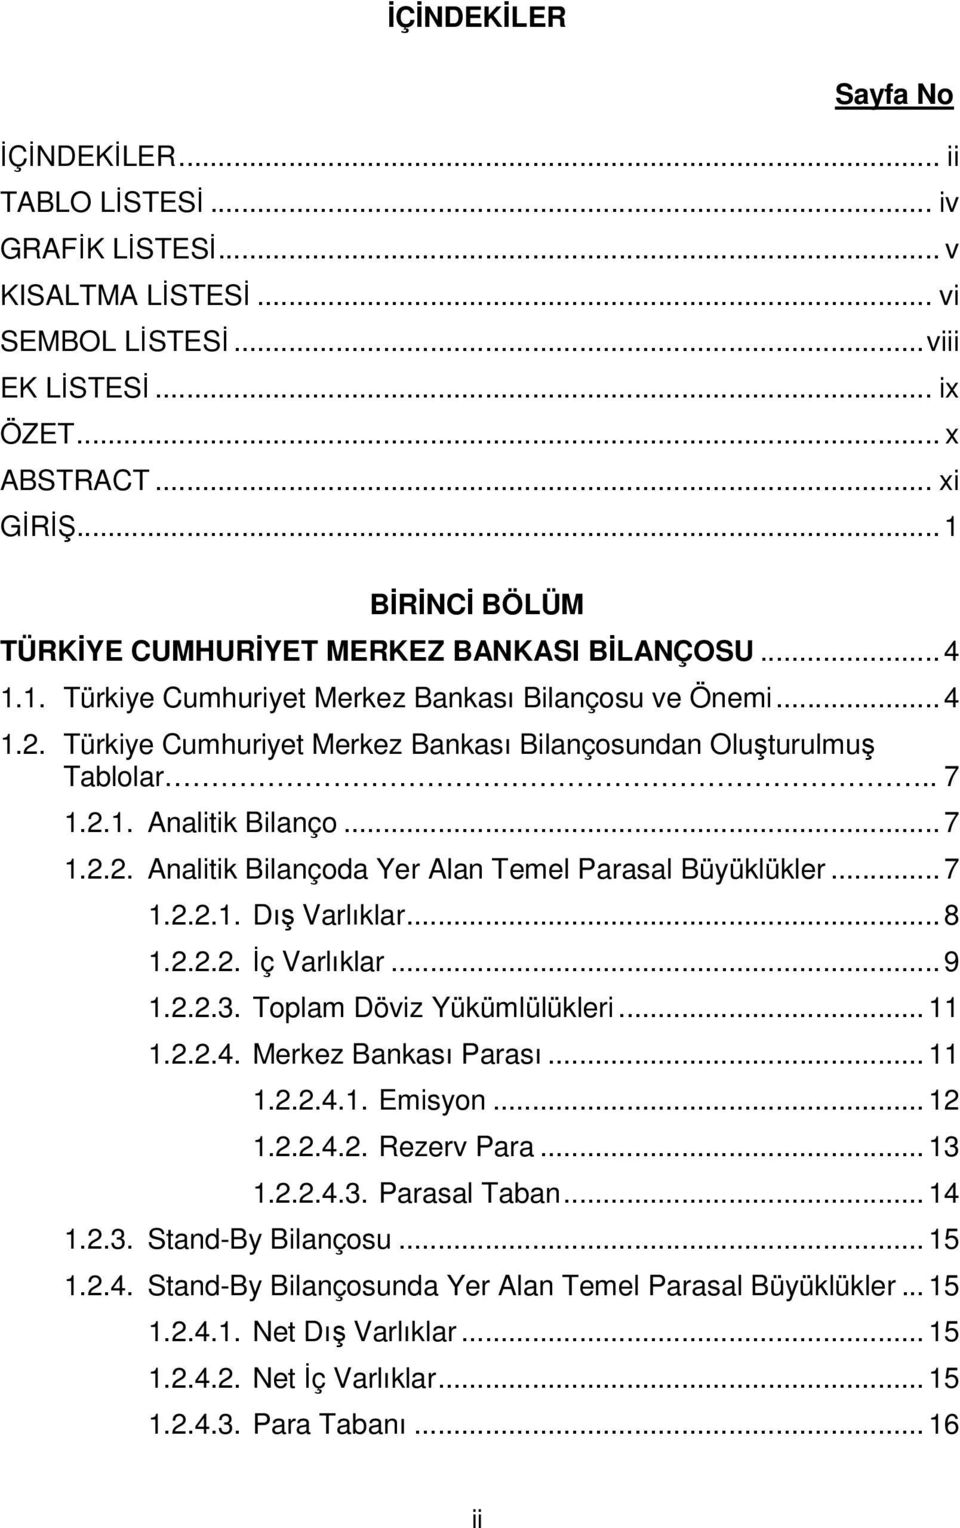 Türkiye Cumhuriyet Merkez Bankası Bilançosundan Oluşturulmuş Tablolar.. 7 1.2.1. Analitik Bilanço...7 1.2.2. Analitik Bilançoda Yer Alan Temel Parasal Büyüklükler...7 1.2.2.1. Dış Varlıklar...8 1.2.2.2. İç Varlıklar.